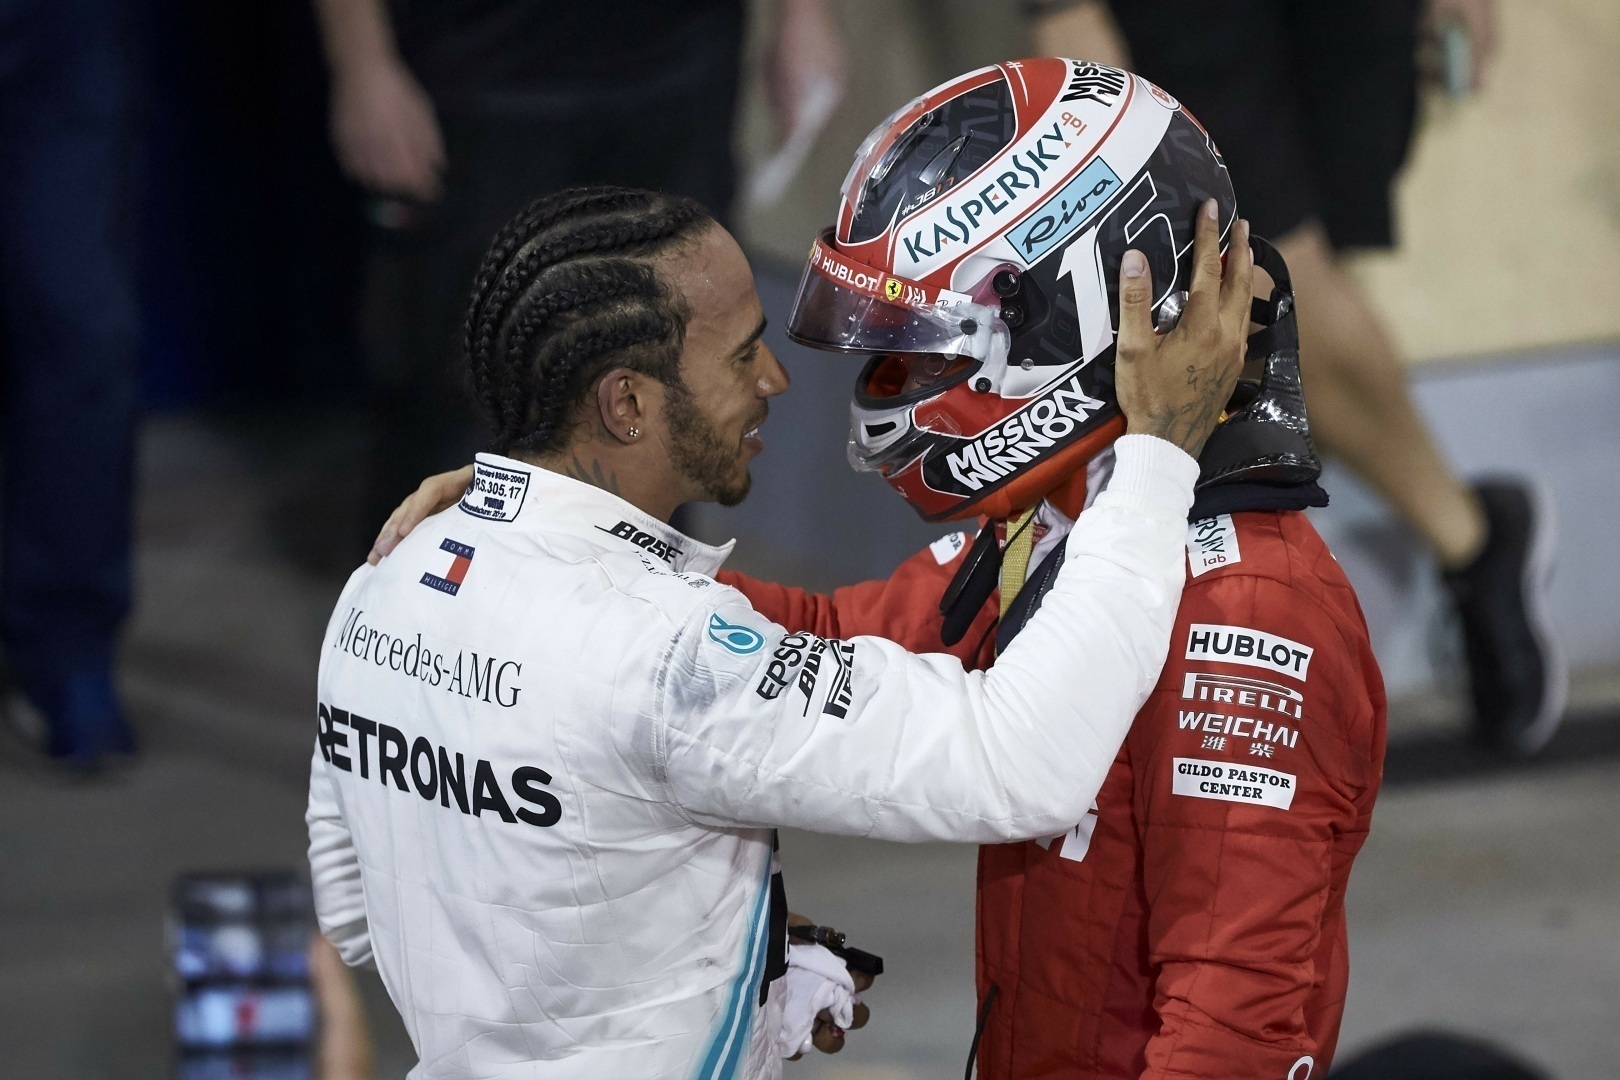 Lewis Hamilton consoles Charles Leclerc